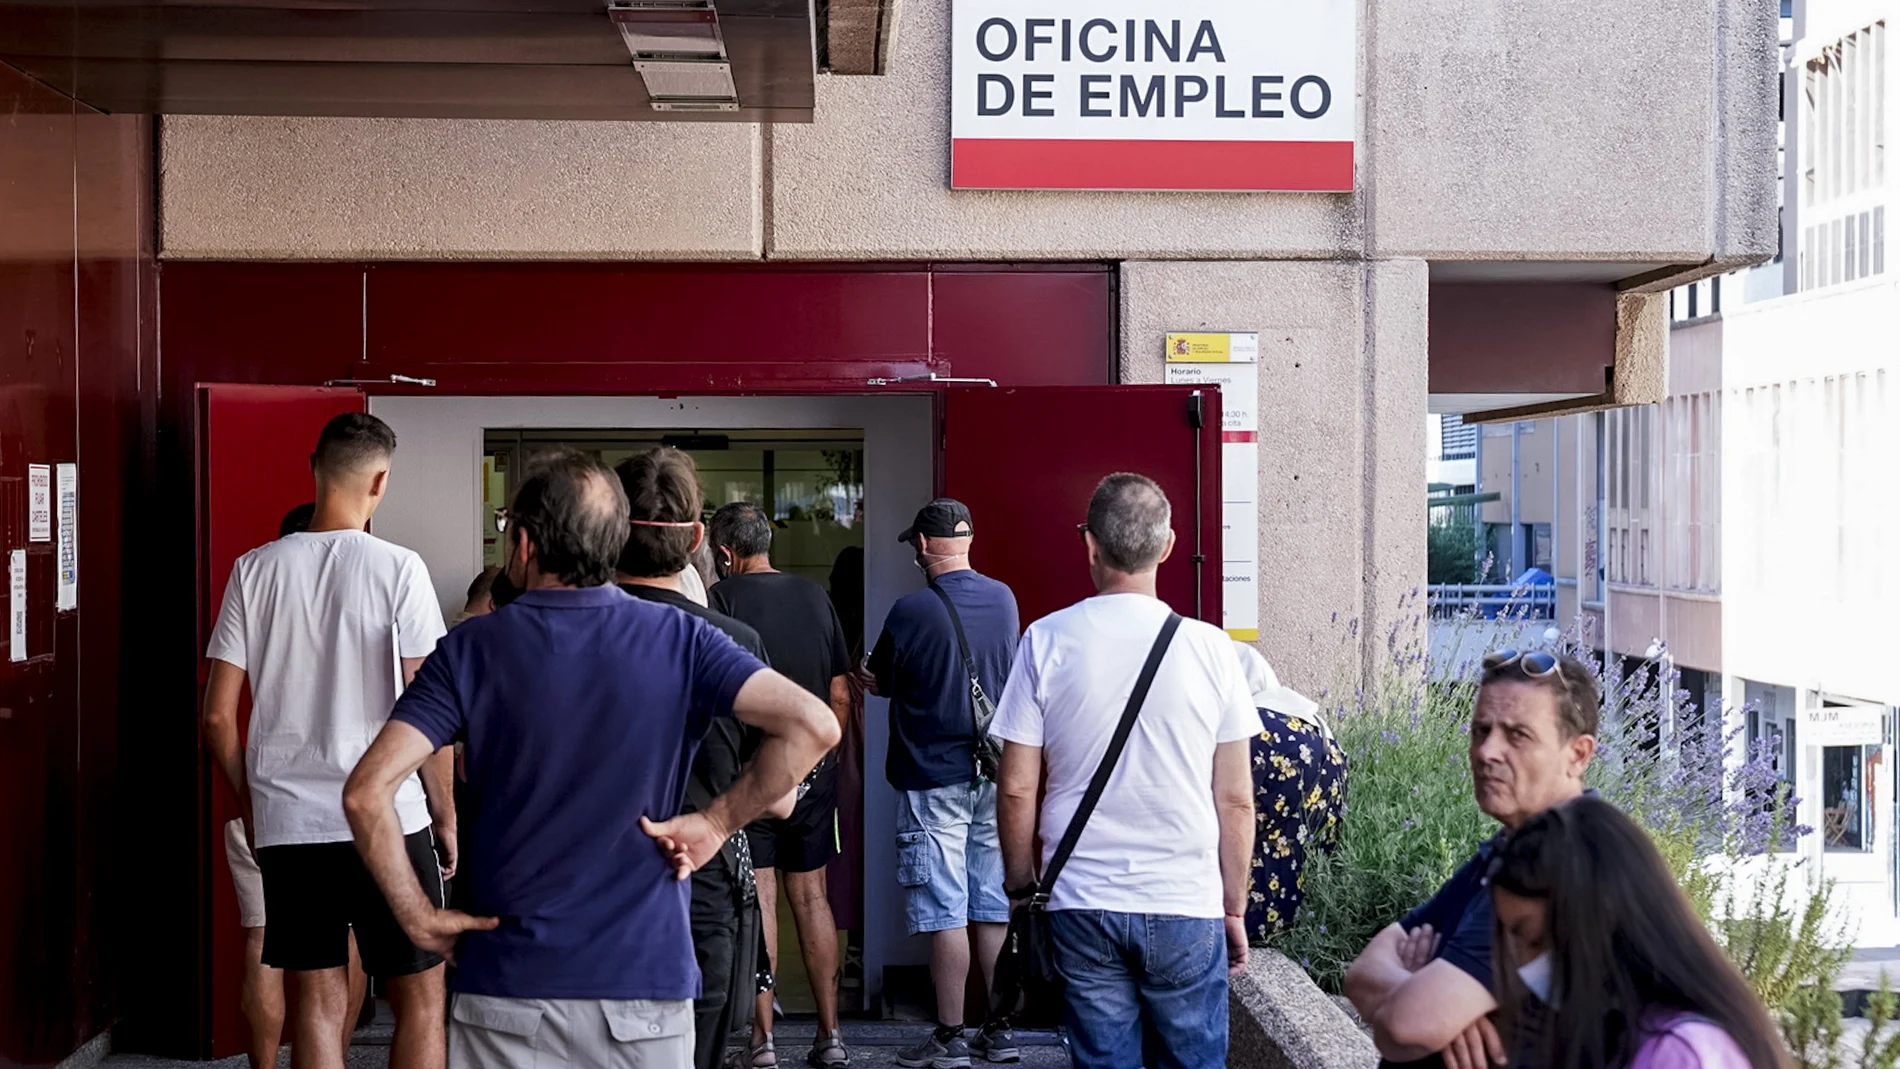 Varias personas esperan para entrar en la oficina de empleo en Madrid